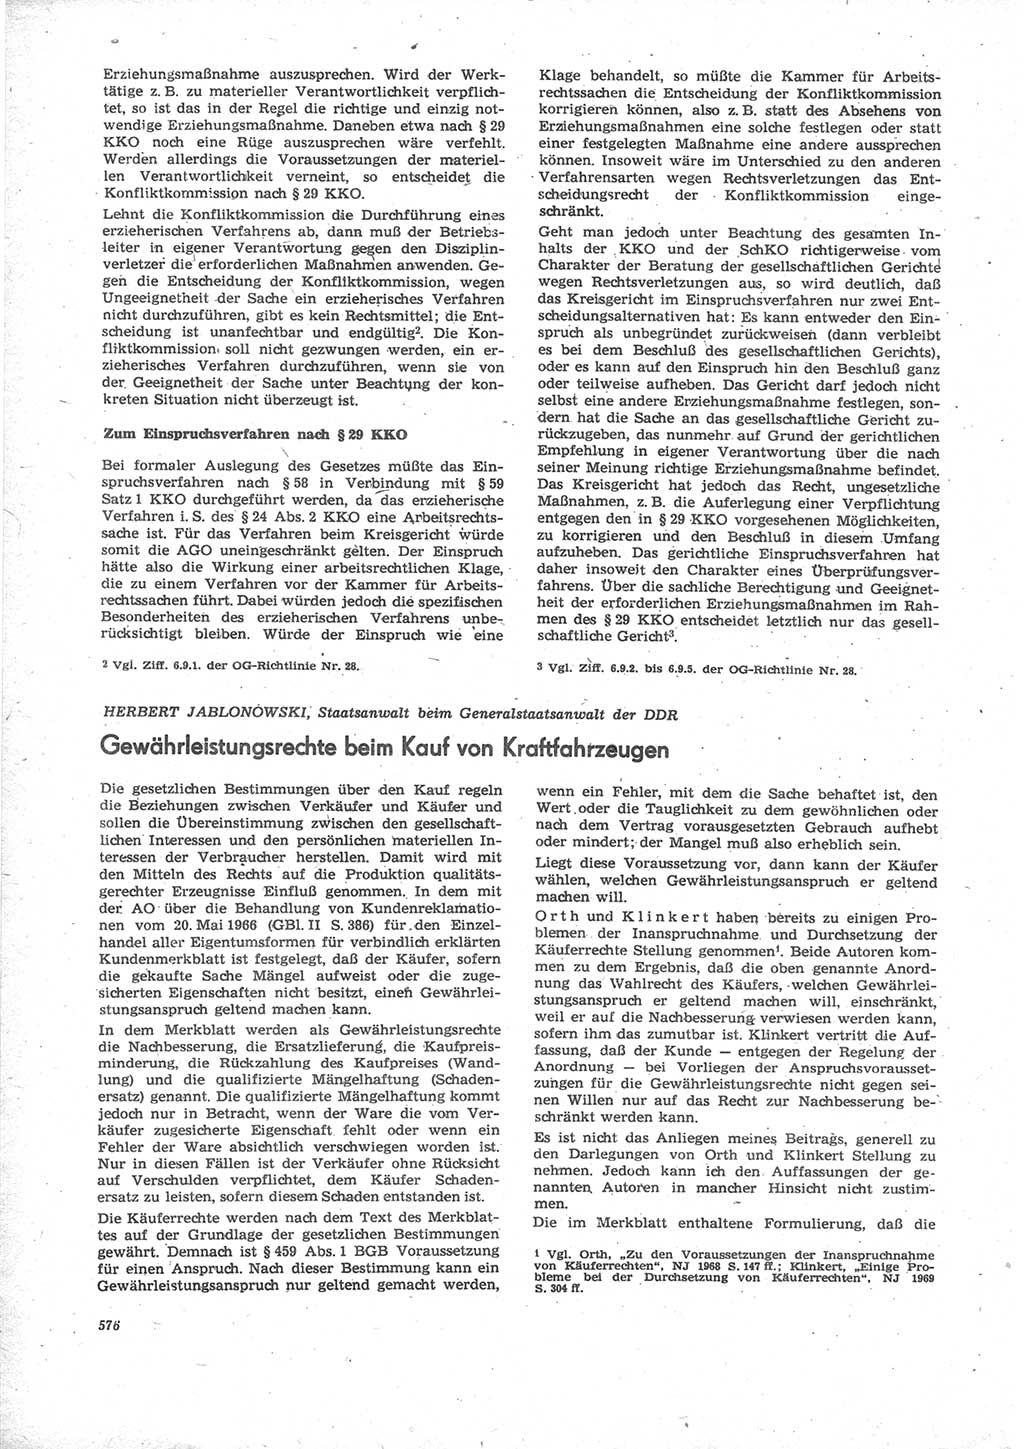 Neue Justiz (NJ), Zeitschrift für Recht und Rechtswissenschaft [Deutsche Demokratische Republik (DDR)], 24. Jahrgang 1970, Seite 576 (NJ DDR 1970, S. 576)